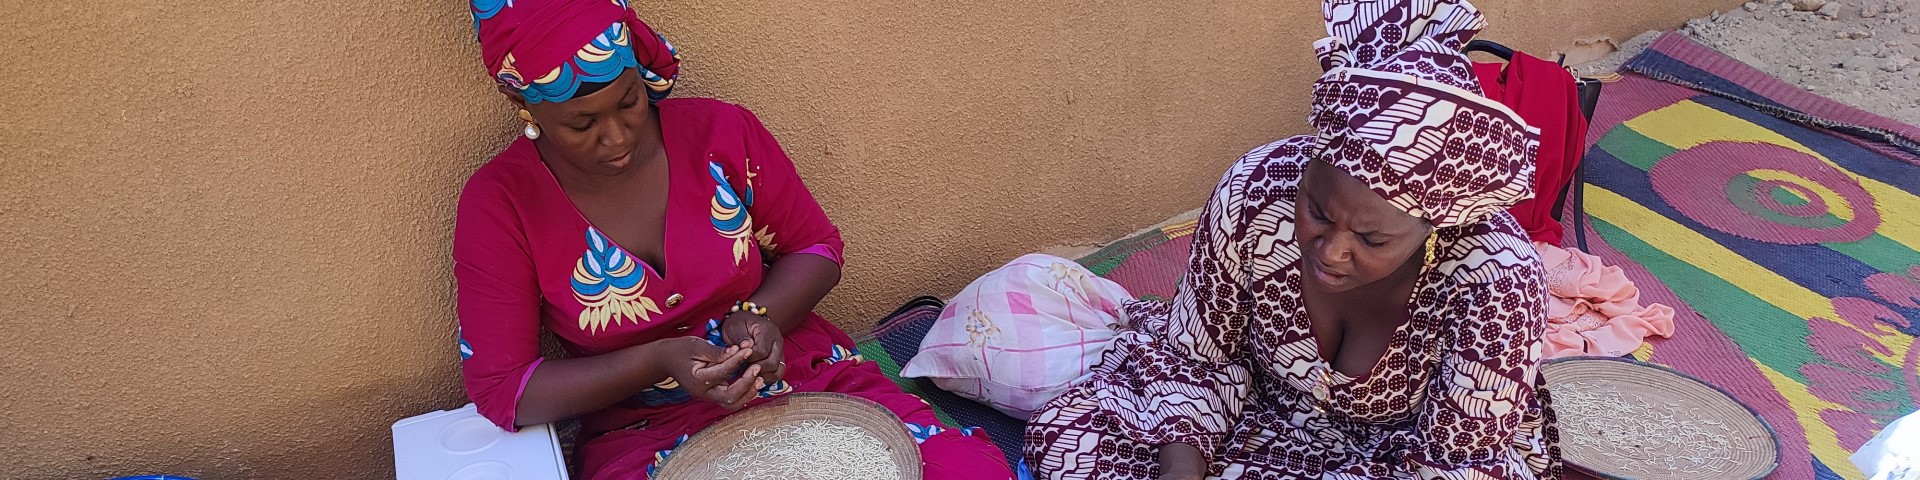 Deux femmes de l’association de femmes de Diré assises en tailleur par terre trient le blé étalé dans de grands plats.